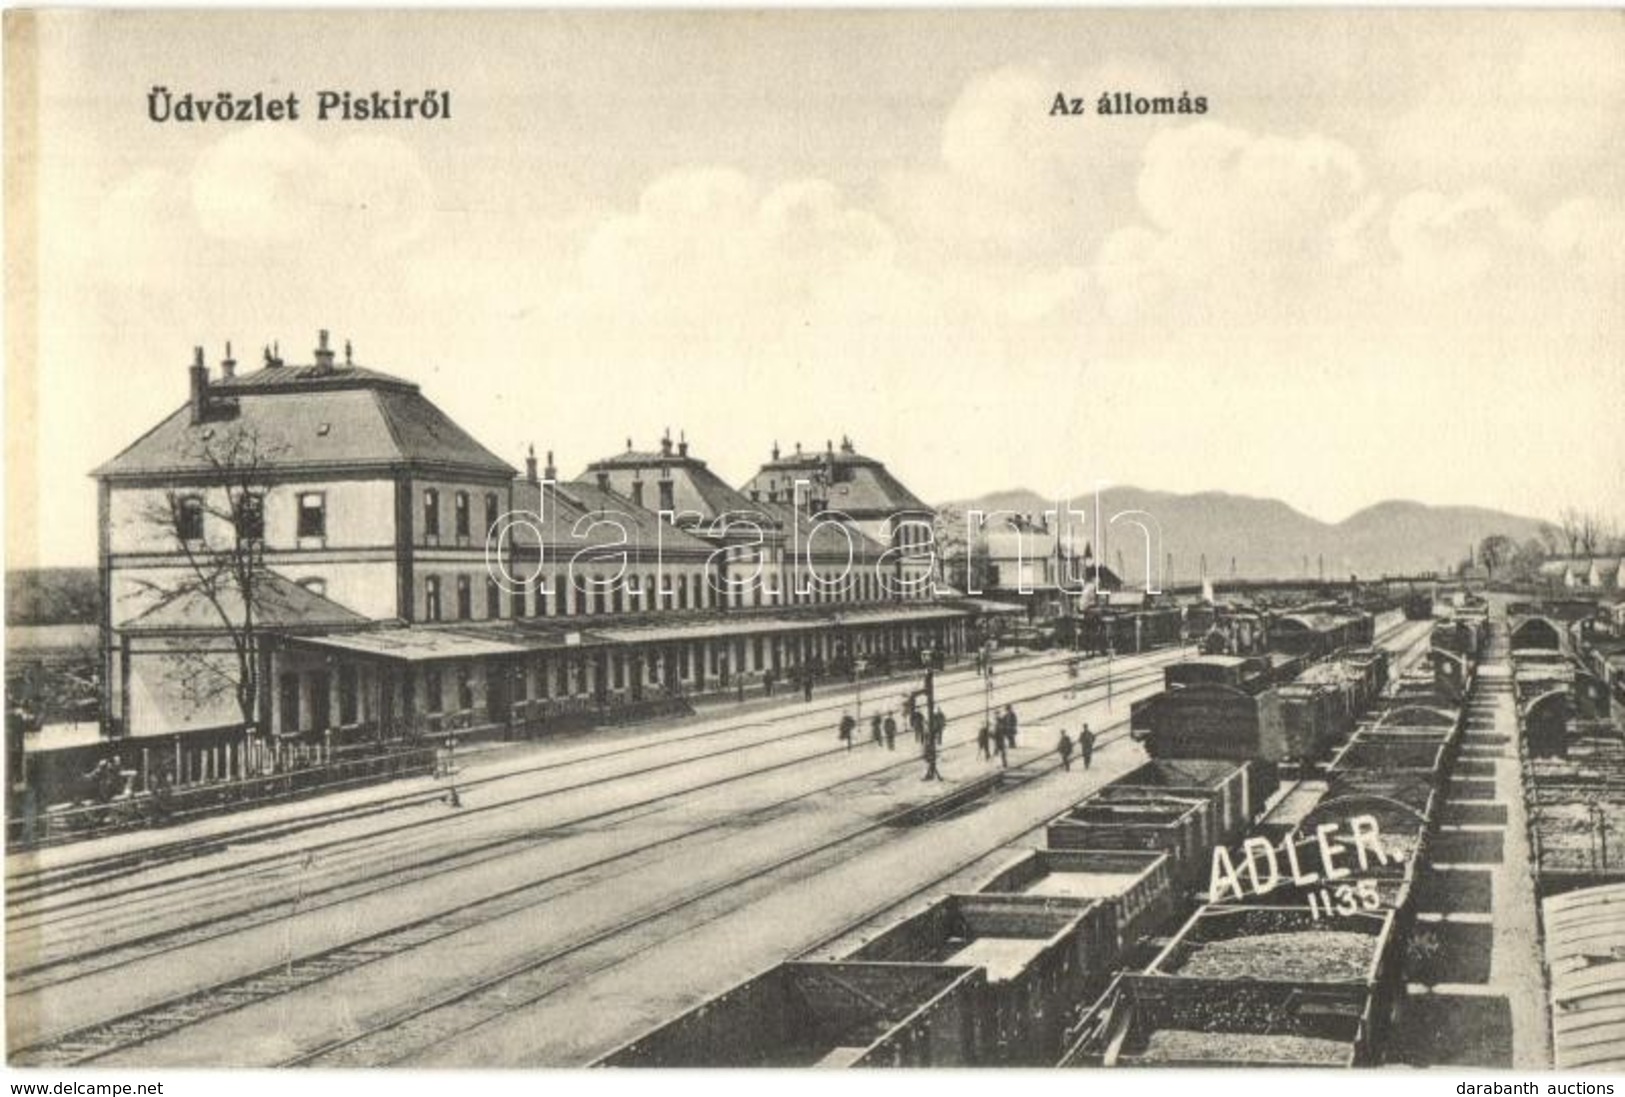 ** T1/T2 Piski, Simeria; Vasútállomás Vagonokkal. Adler Fényirda / Railway Station With Wagons - Unclassified